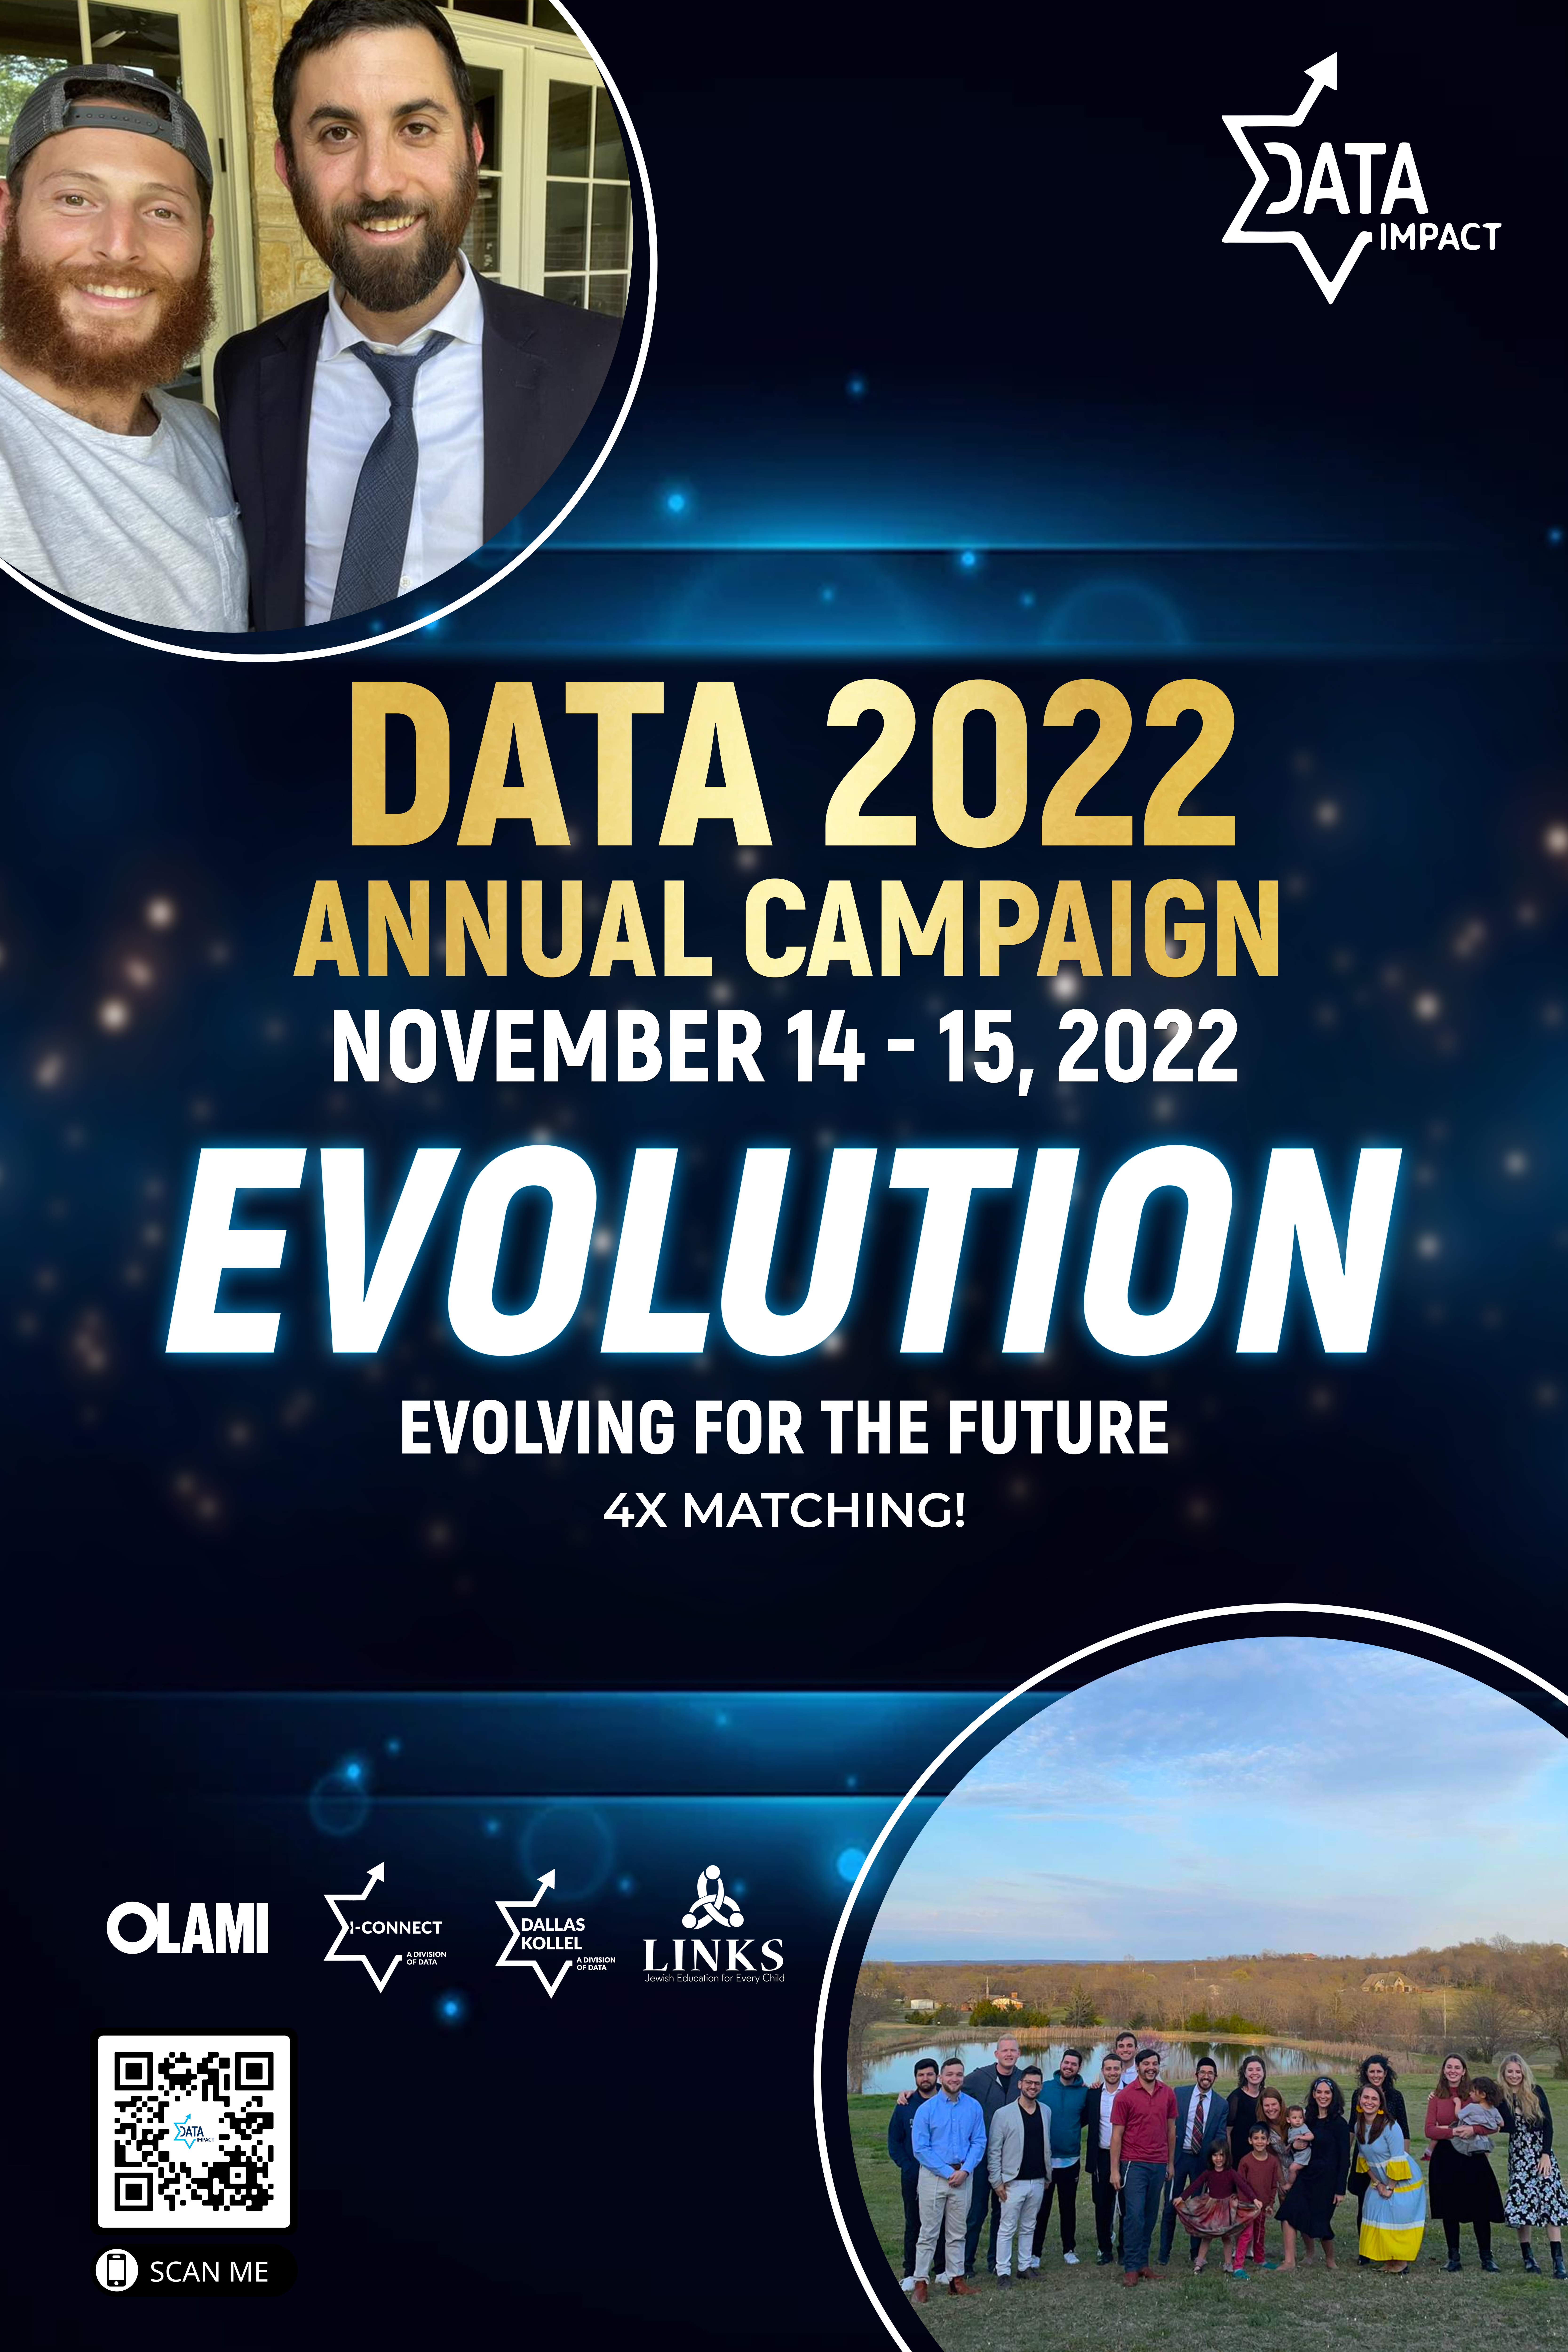 DATA 2022 EVOLUTION CAMPAIGN